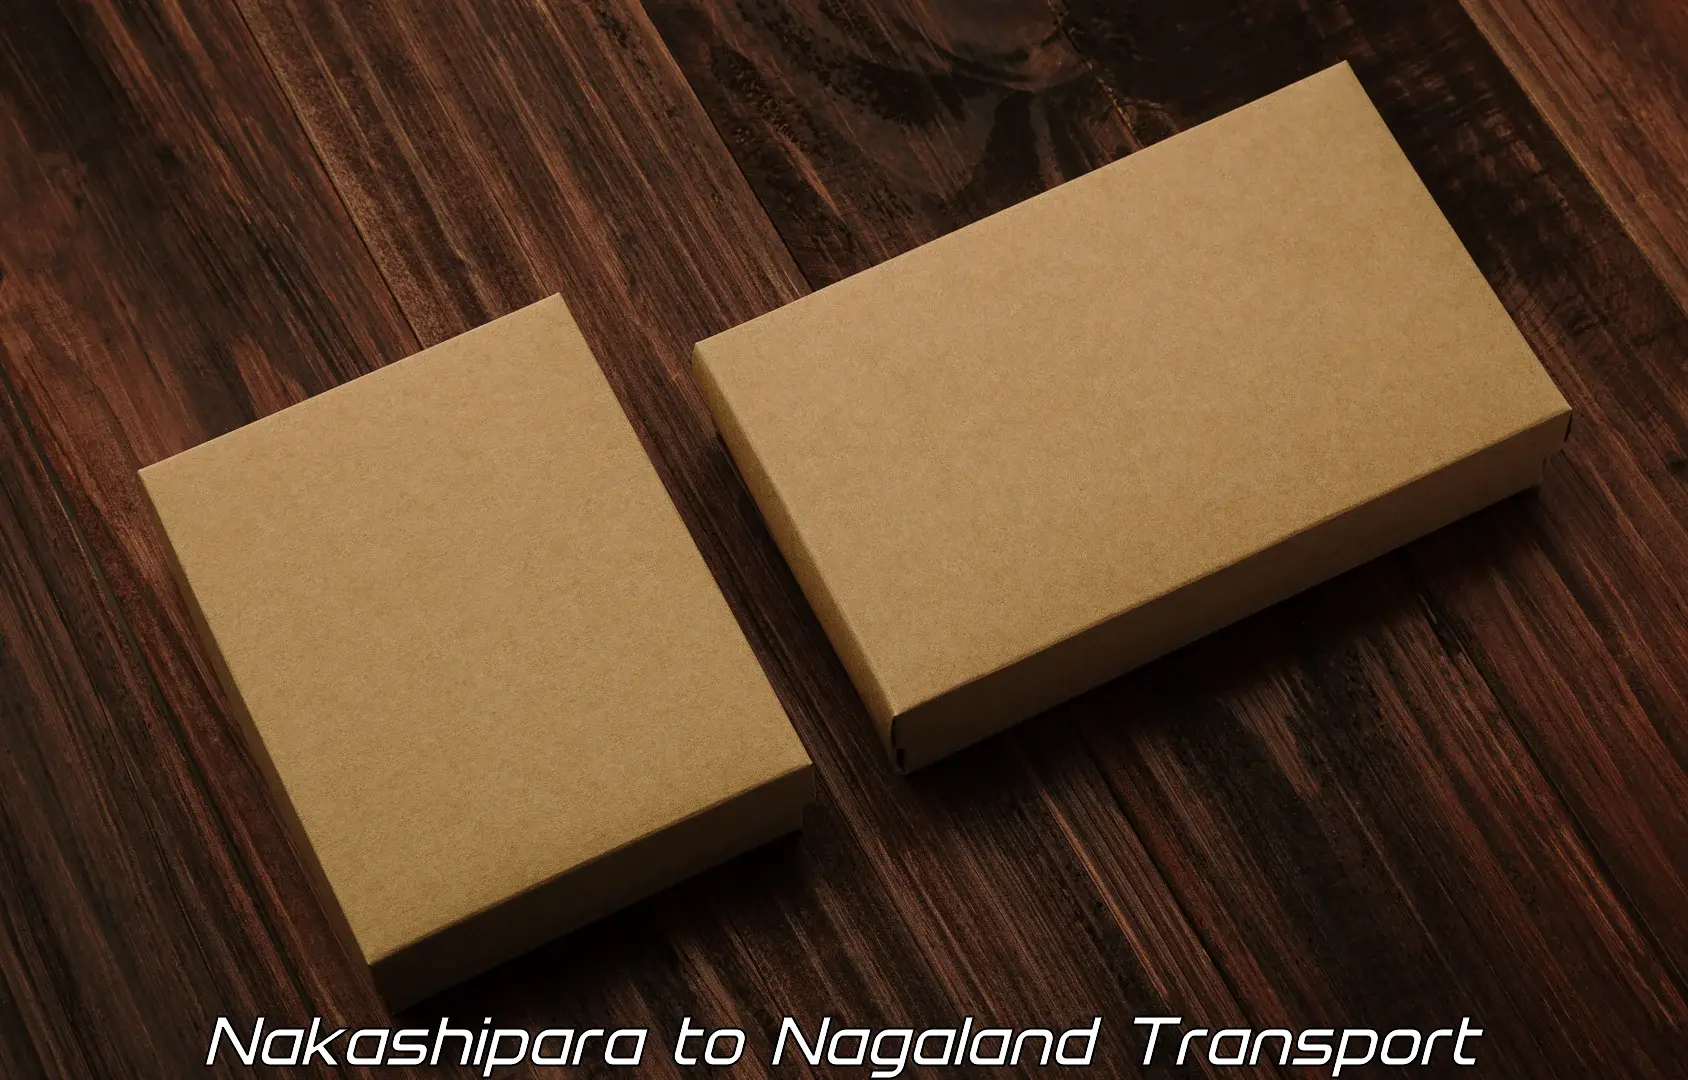 Shipping partner Nakashipara to Tuensang